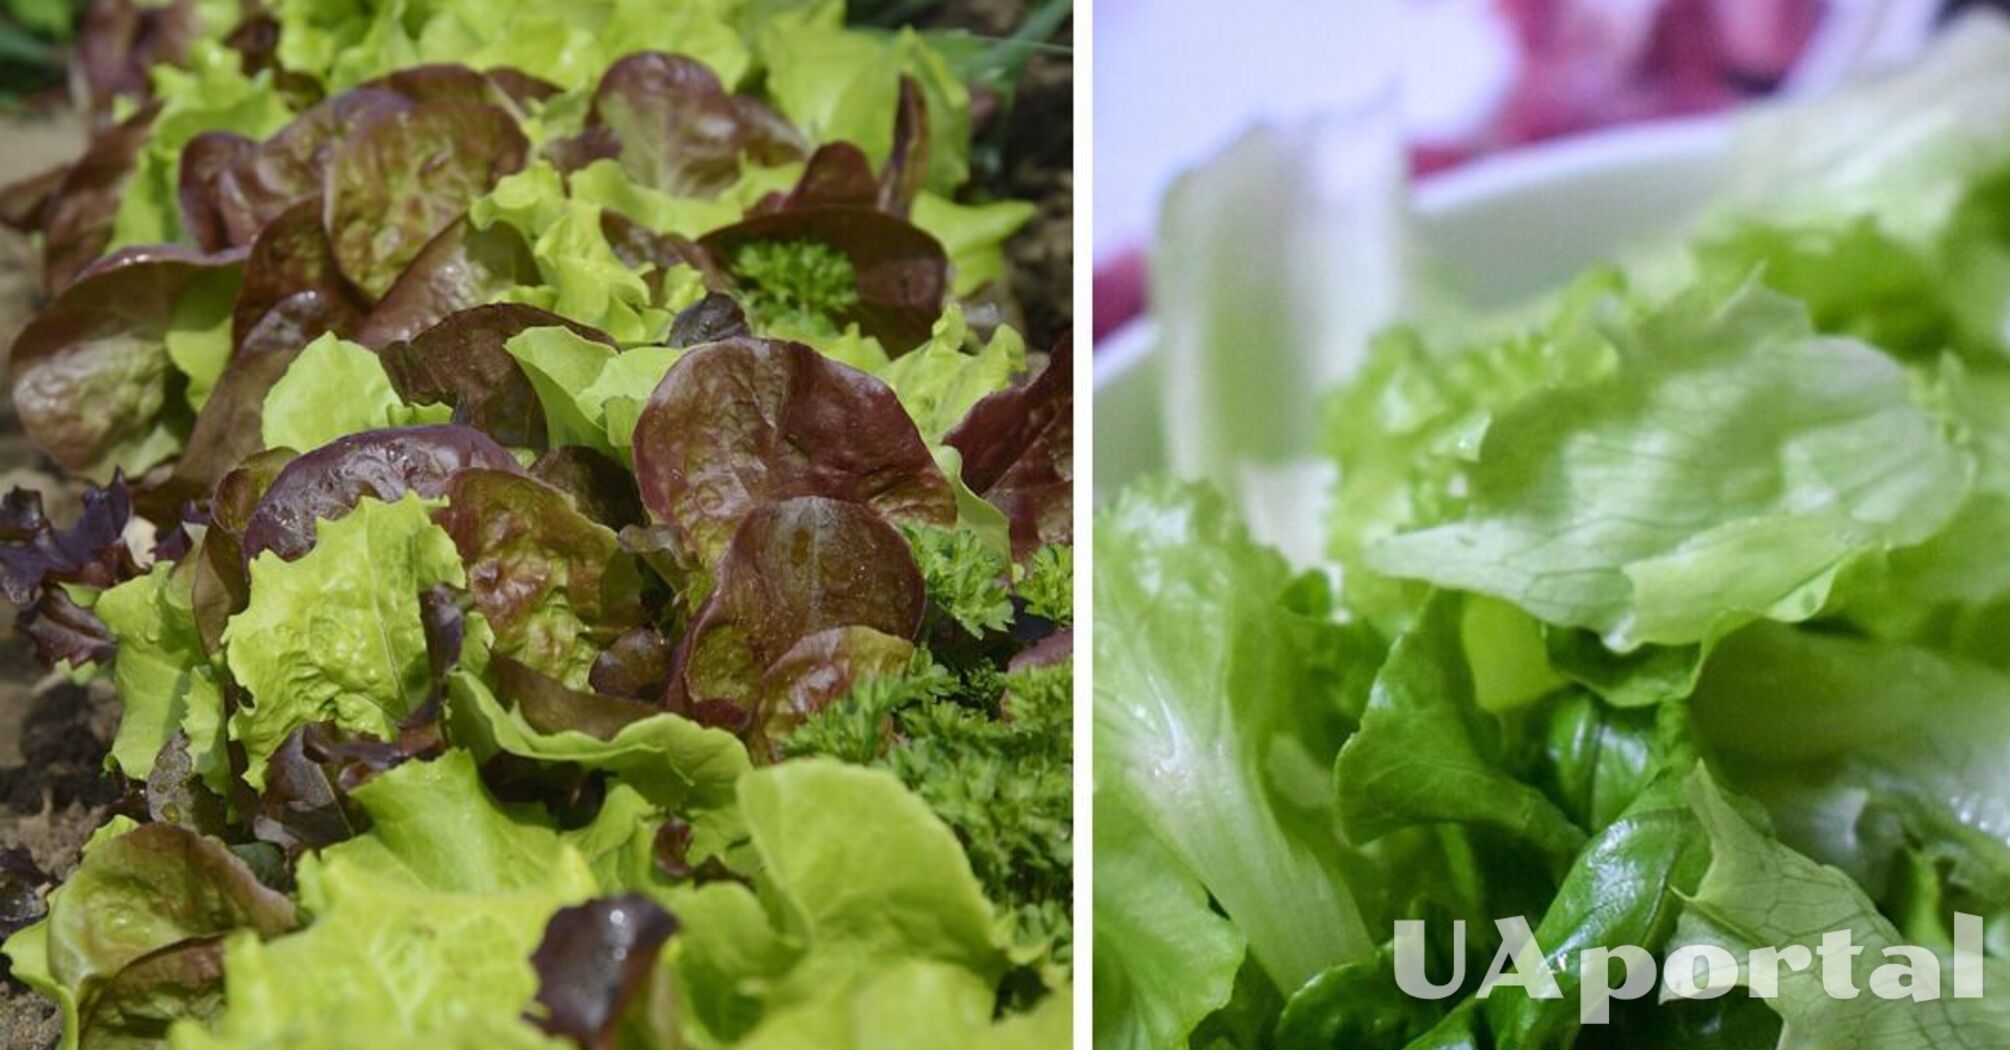 Експерти підказали, як зберегти листя салату свіжим до 30 днів